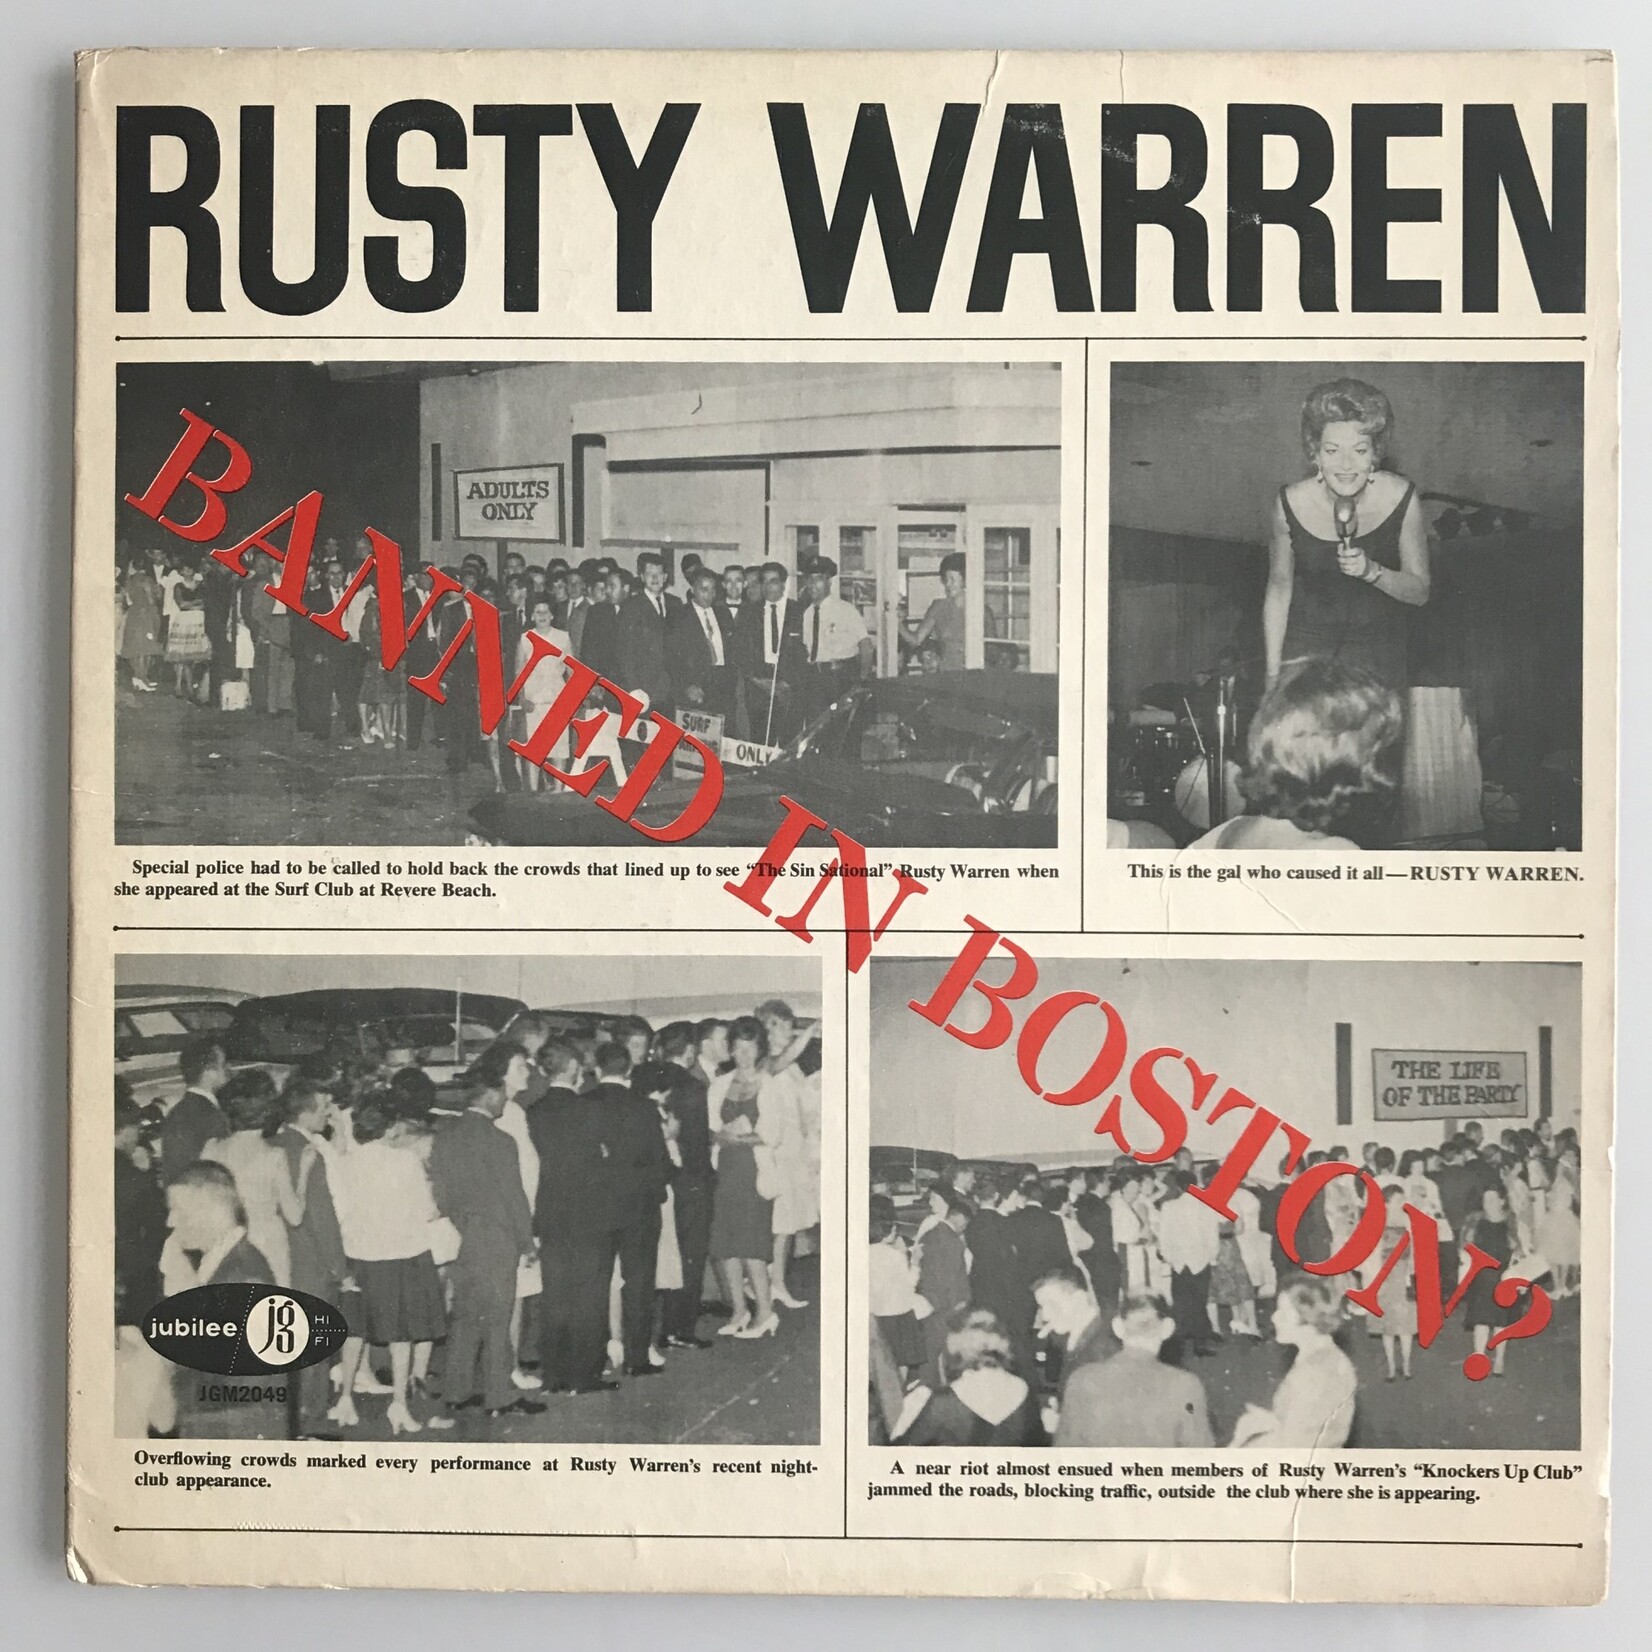 Rusty Warren - Banned In Boston? - Vinyl LP (USED)